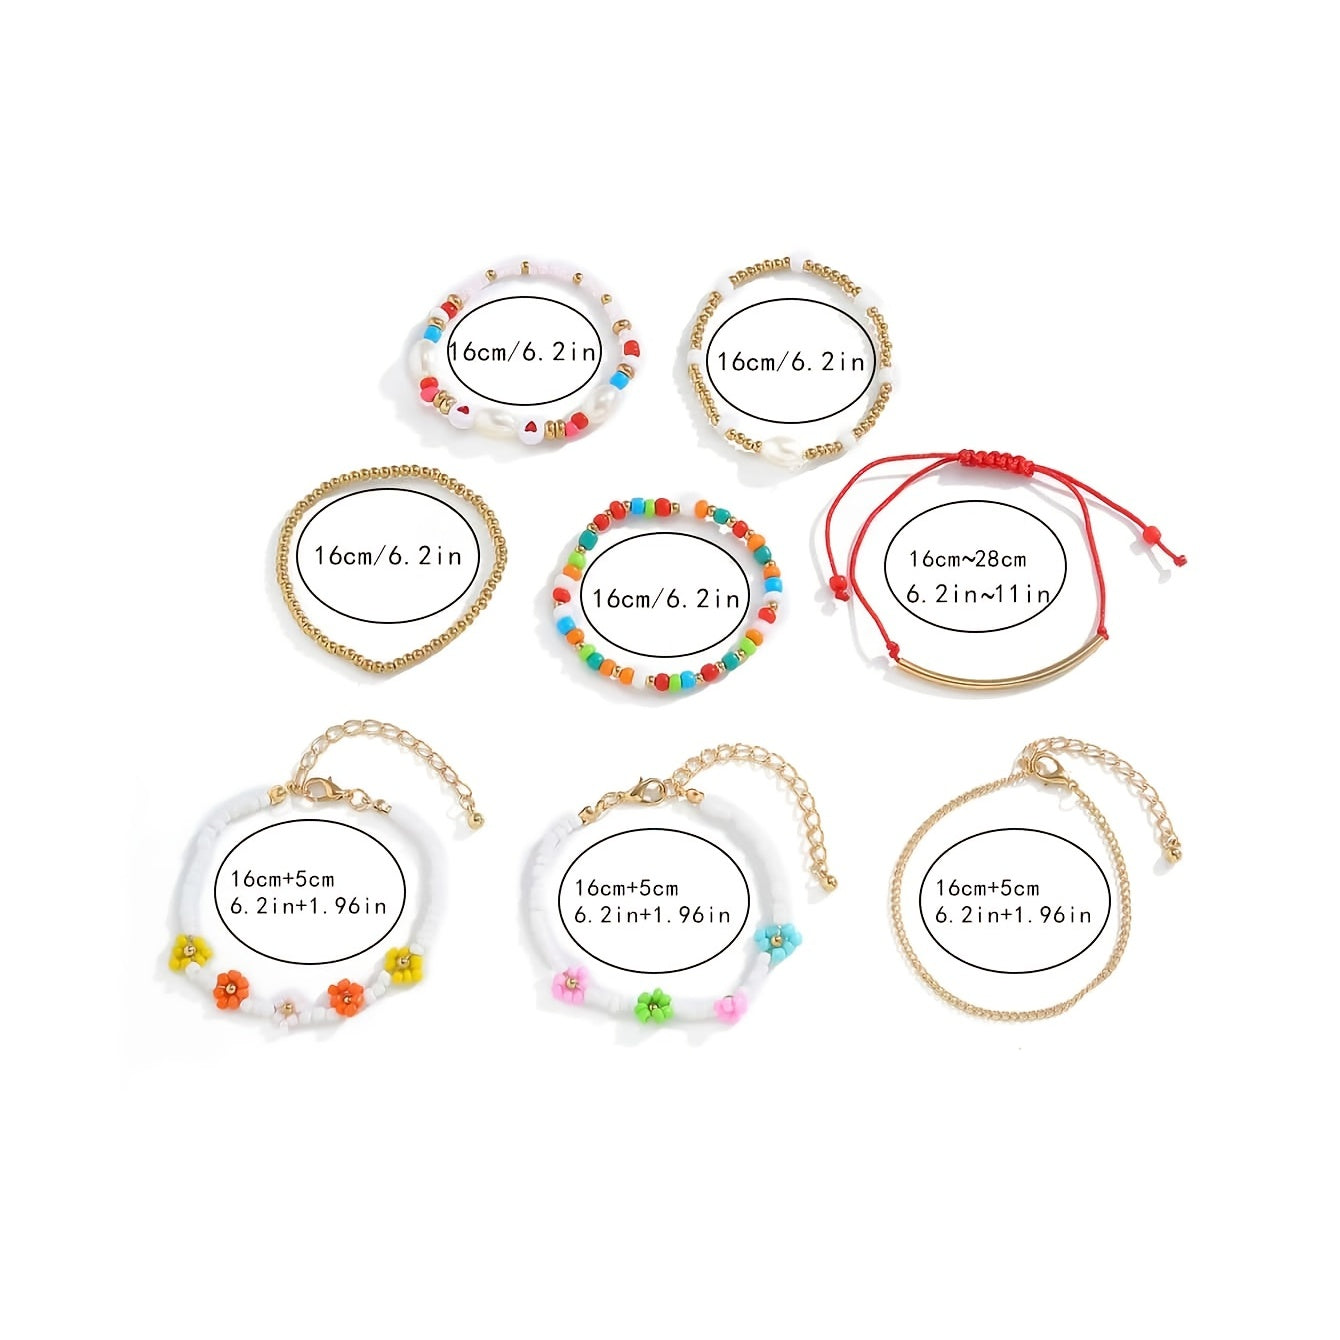 Handmade 8Pcs Colorful Beads Bracelets Set For Women Girls